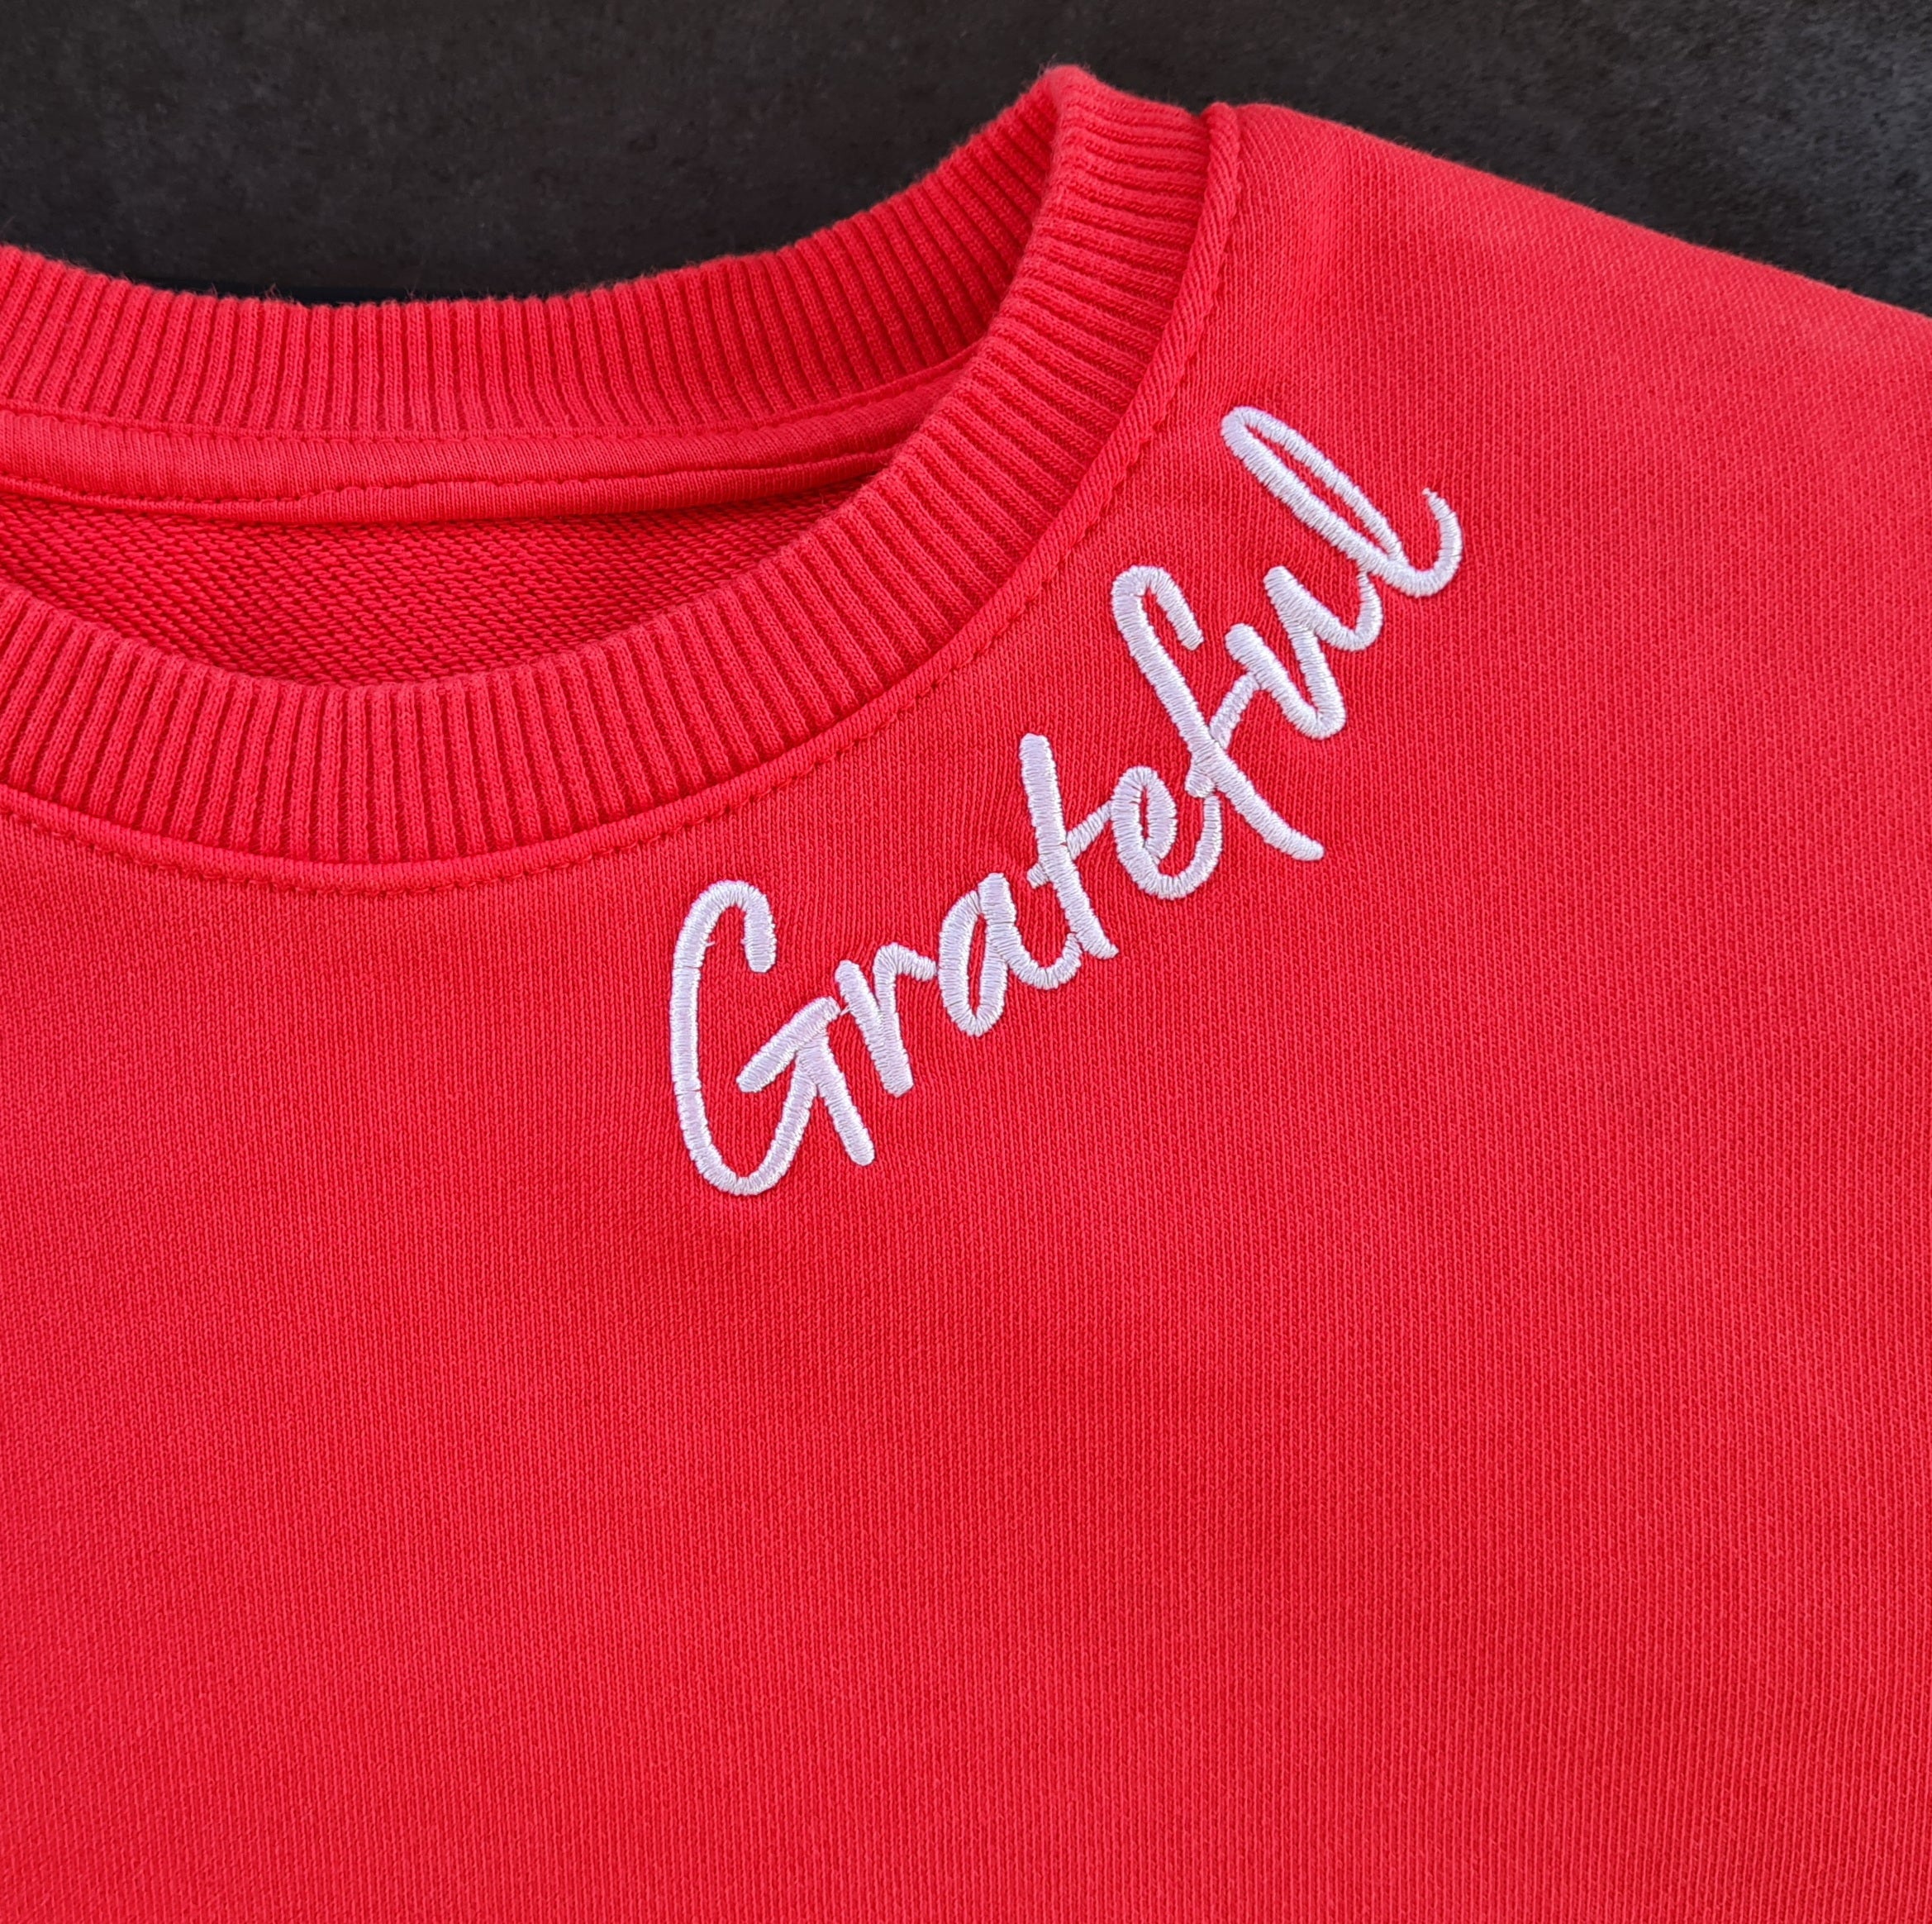 Phoenix | Grateful Sweatshirt (Red)